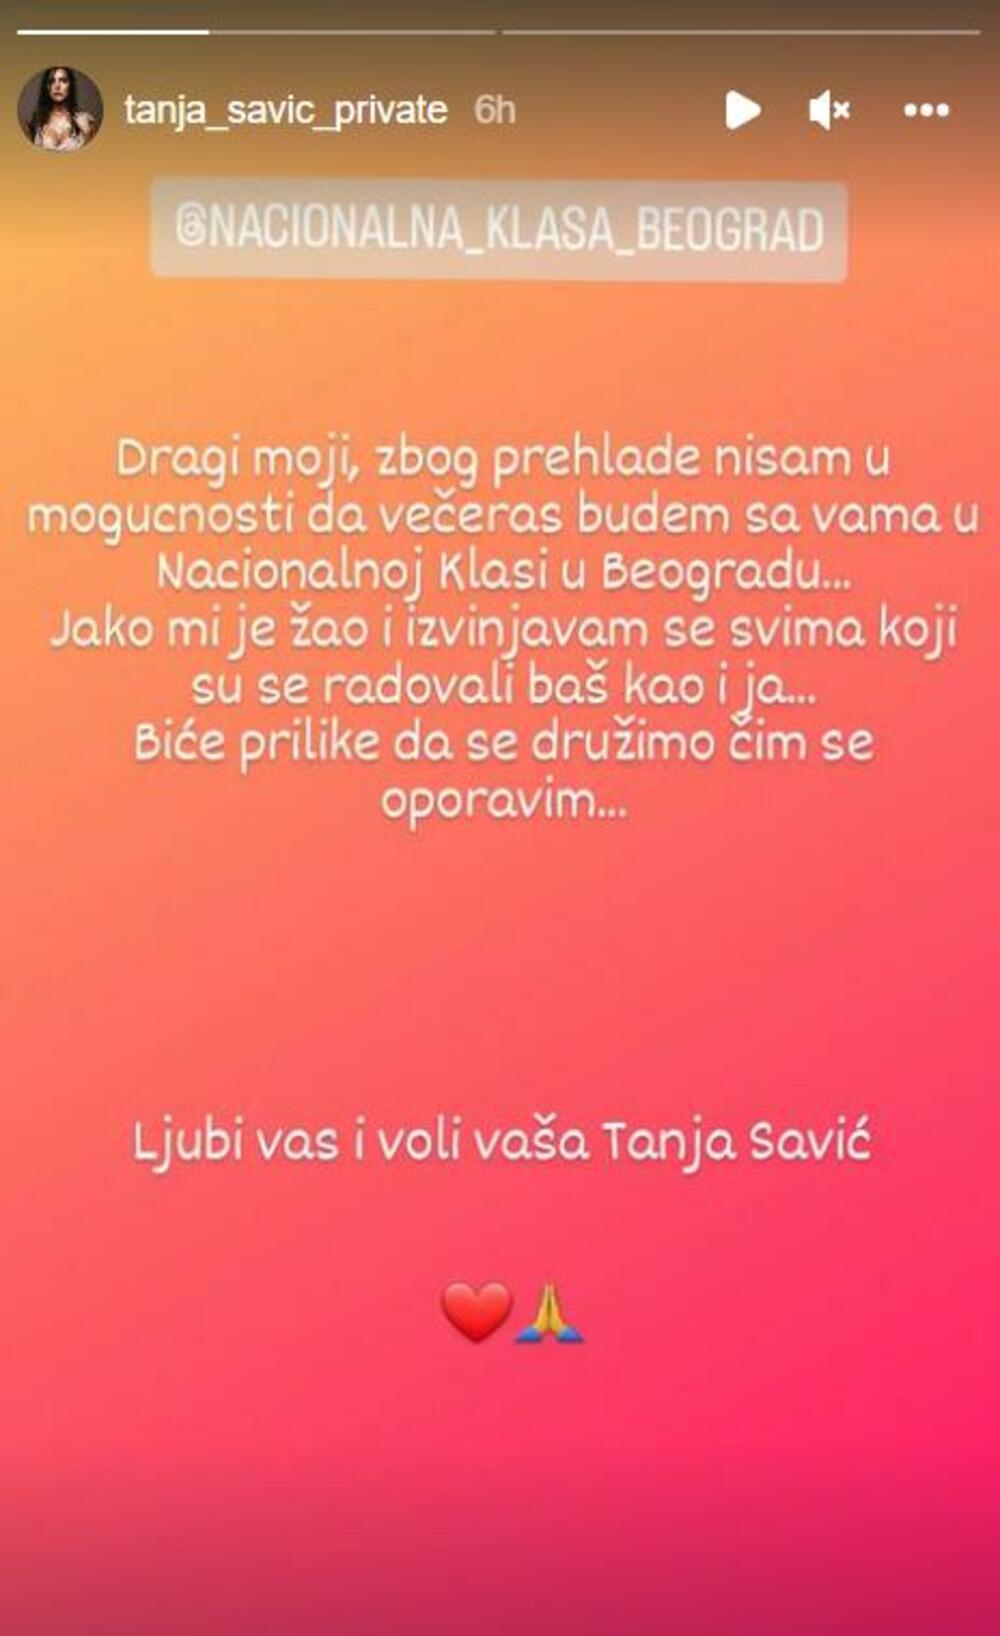 Tanja Savić